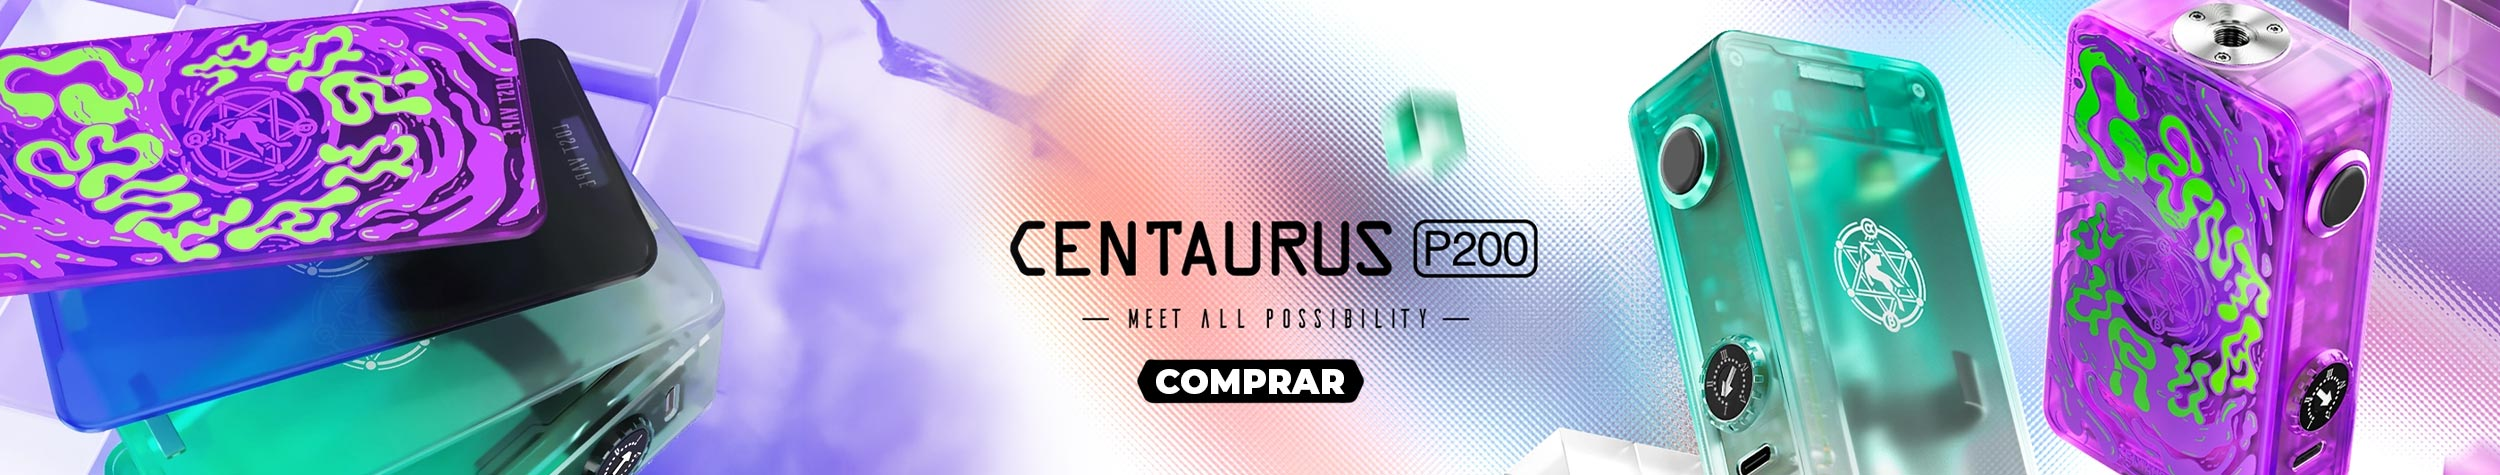 CENTAURUS P200